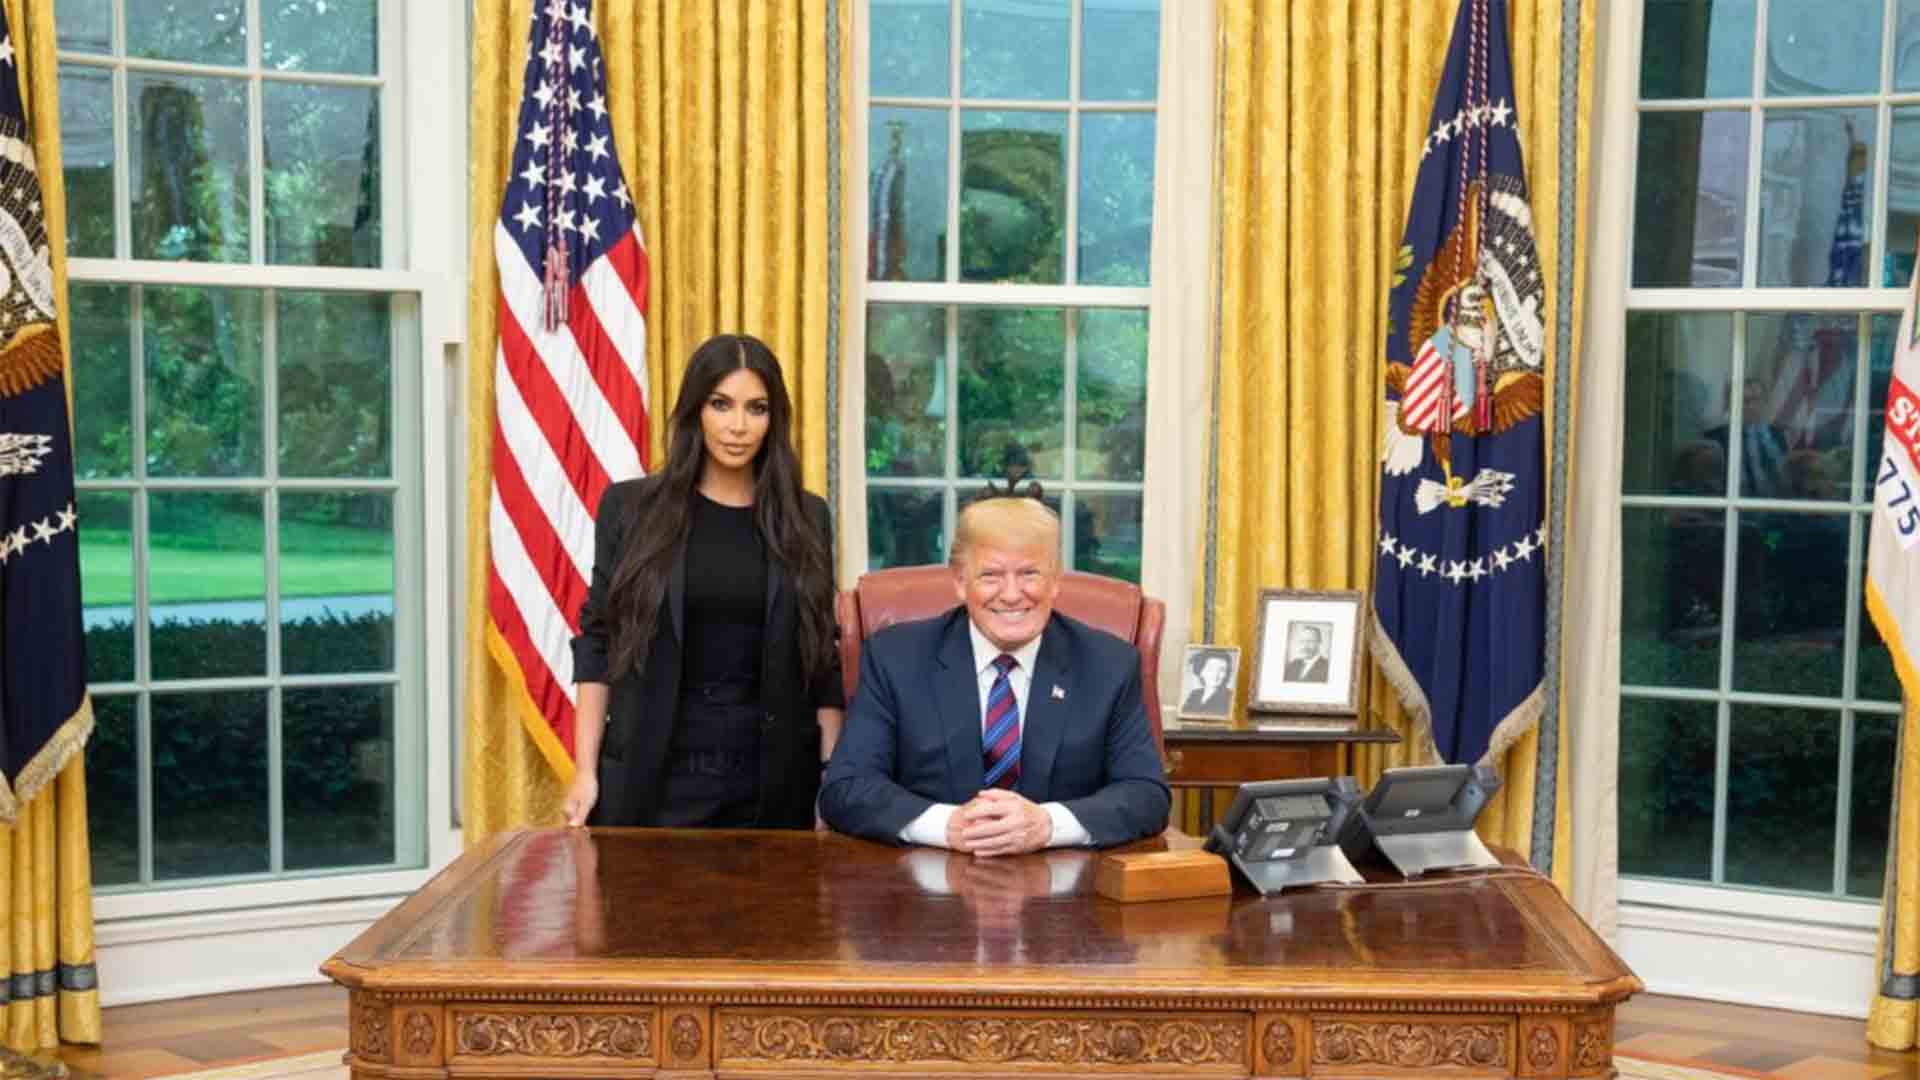 El motivo que ha llevado a Kim Kardashian a la Casa Blanca